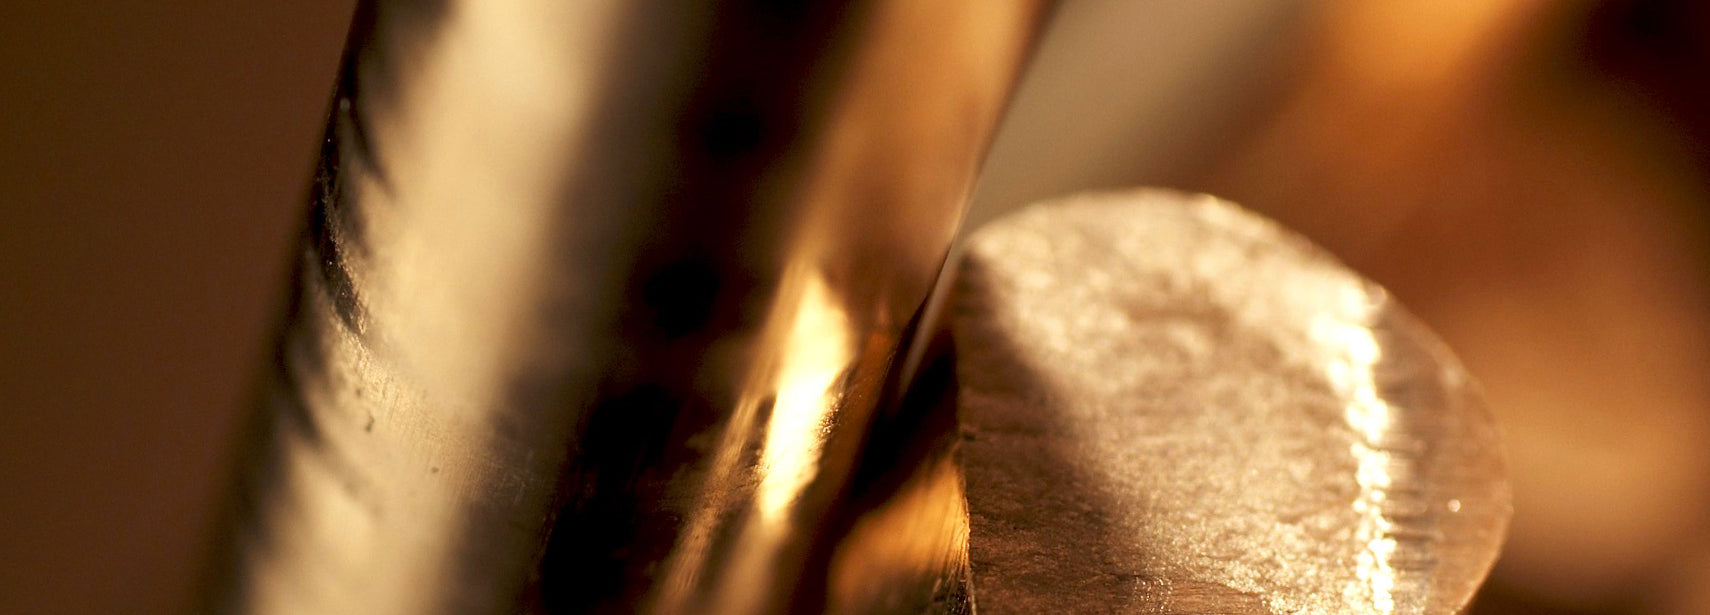 Close up of gold metal